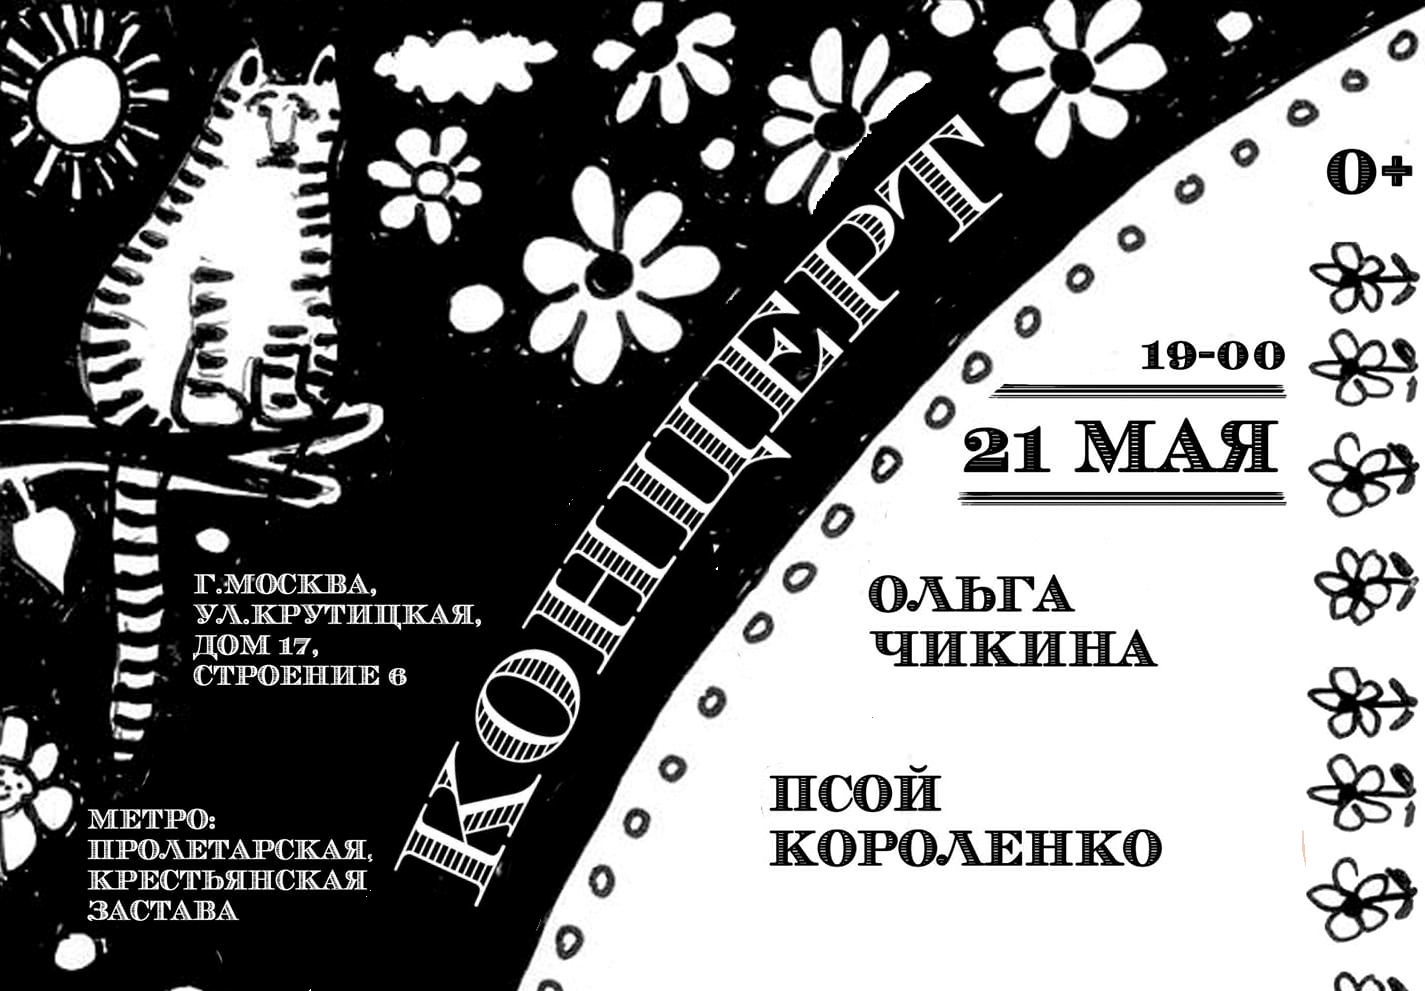 Концерт на Крутицком подворье 21 мая 2019 года.